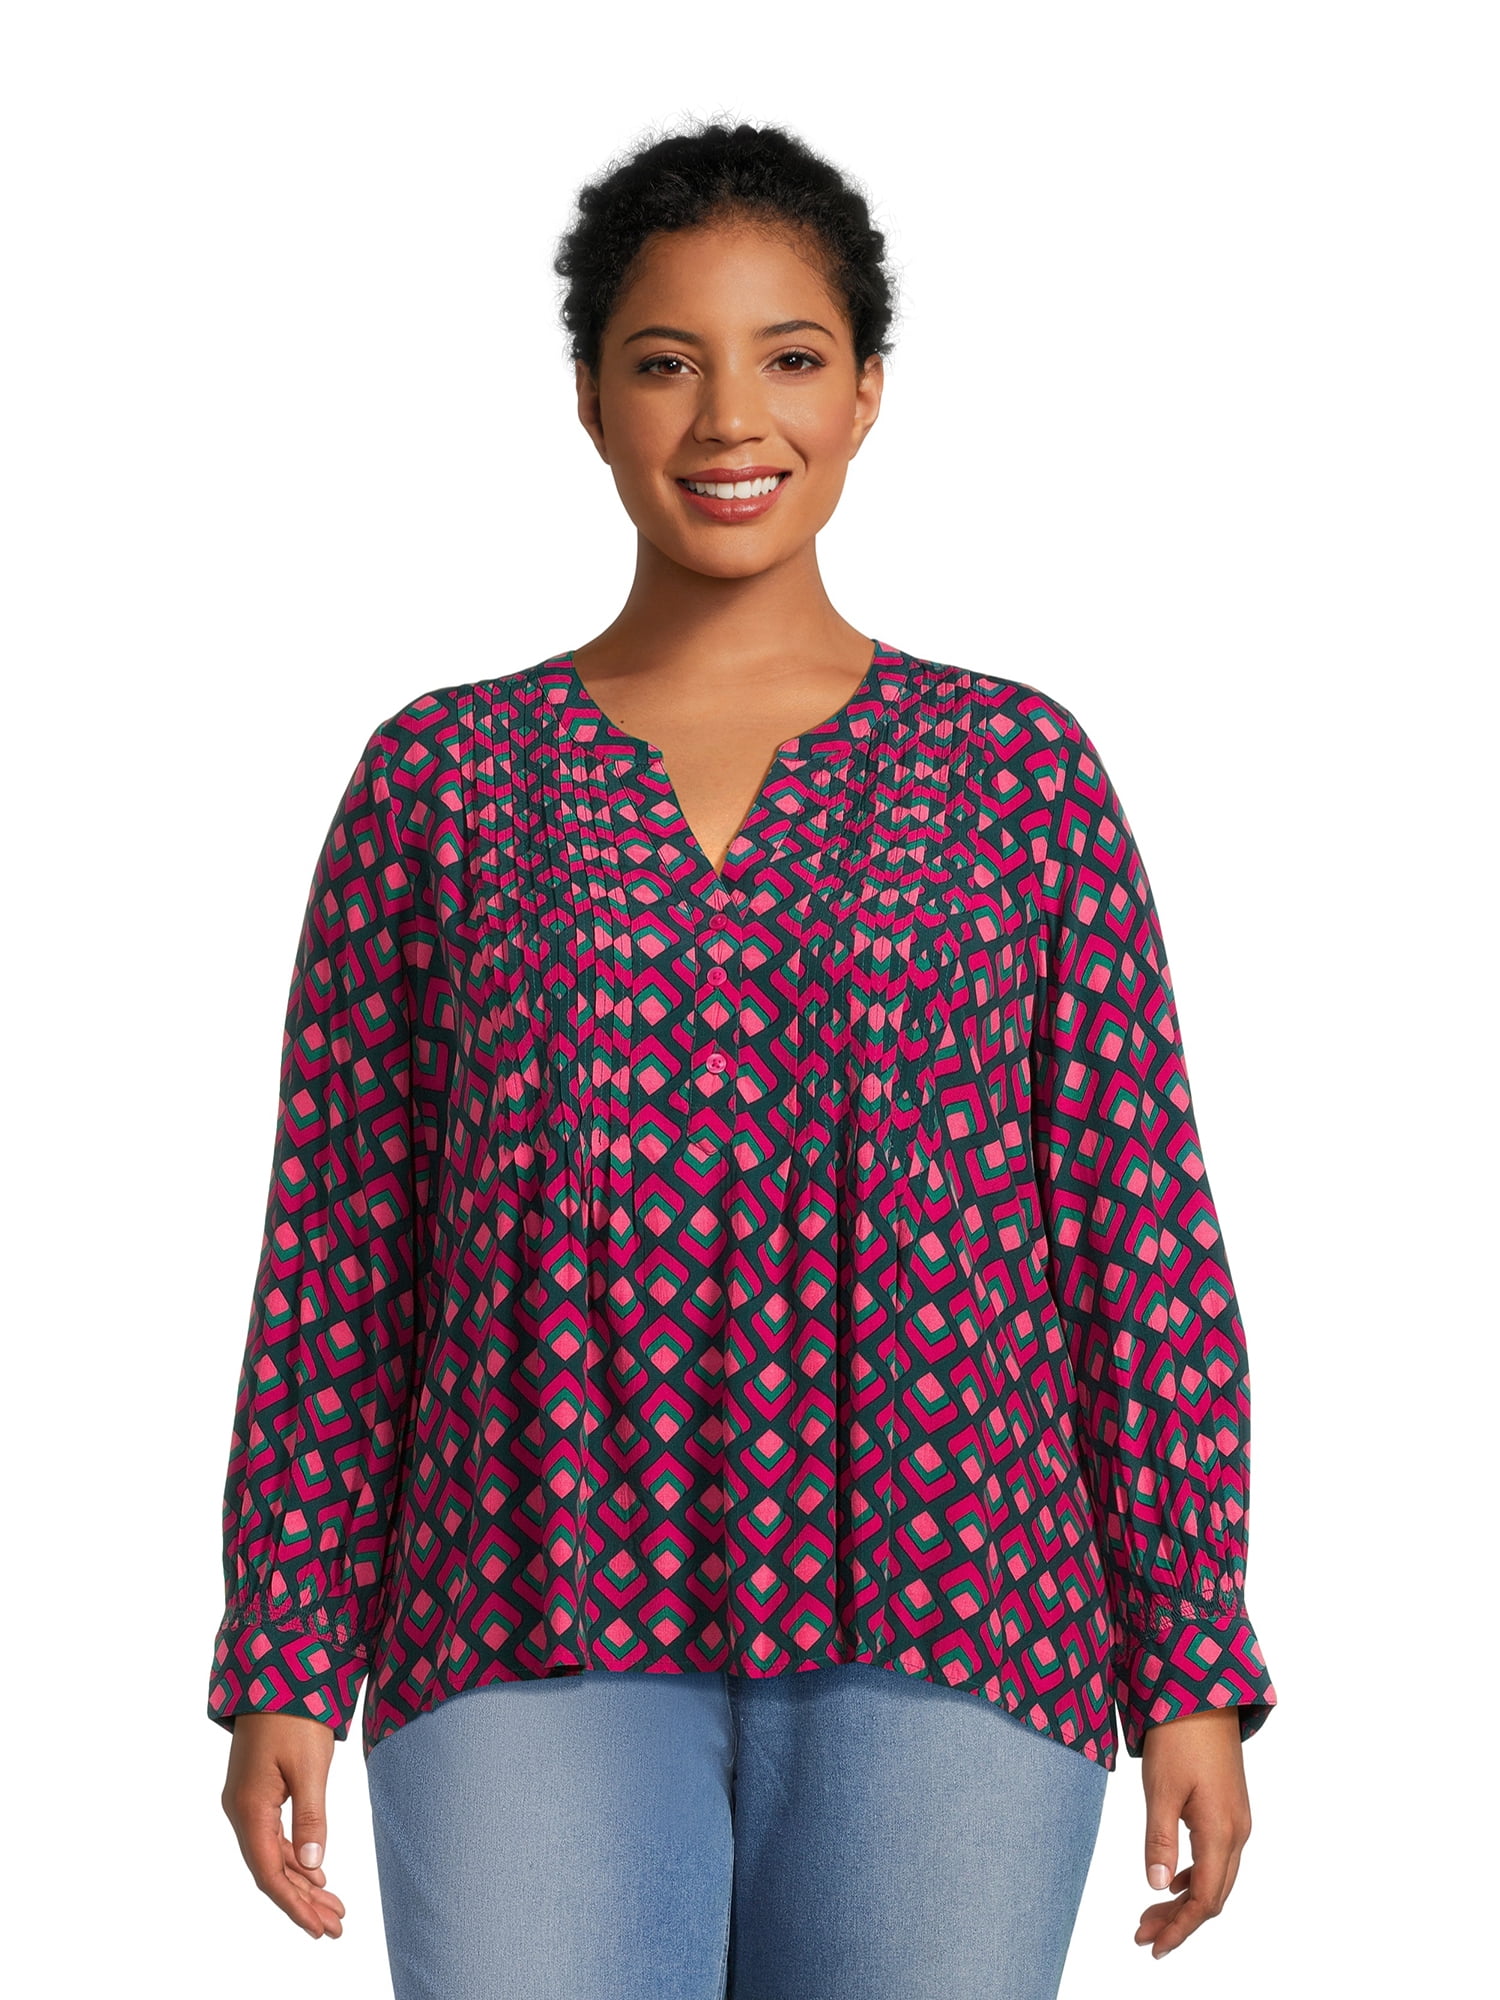 Terra & Sky Women's Plus Size Pleated Long Sleeve Blouse - Walmart.com